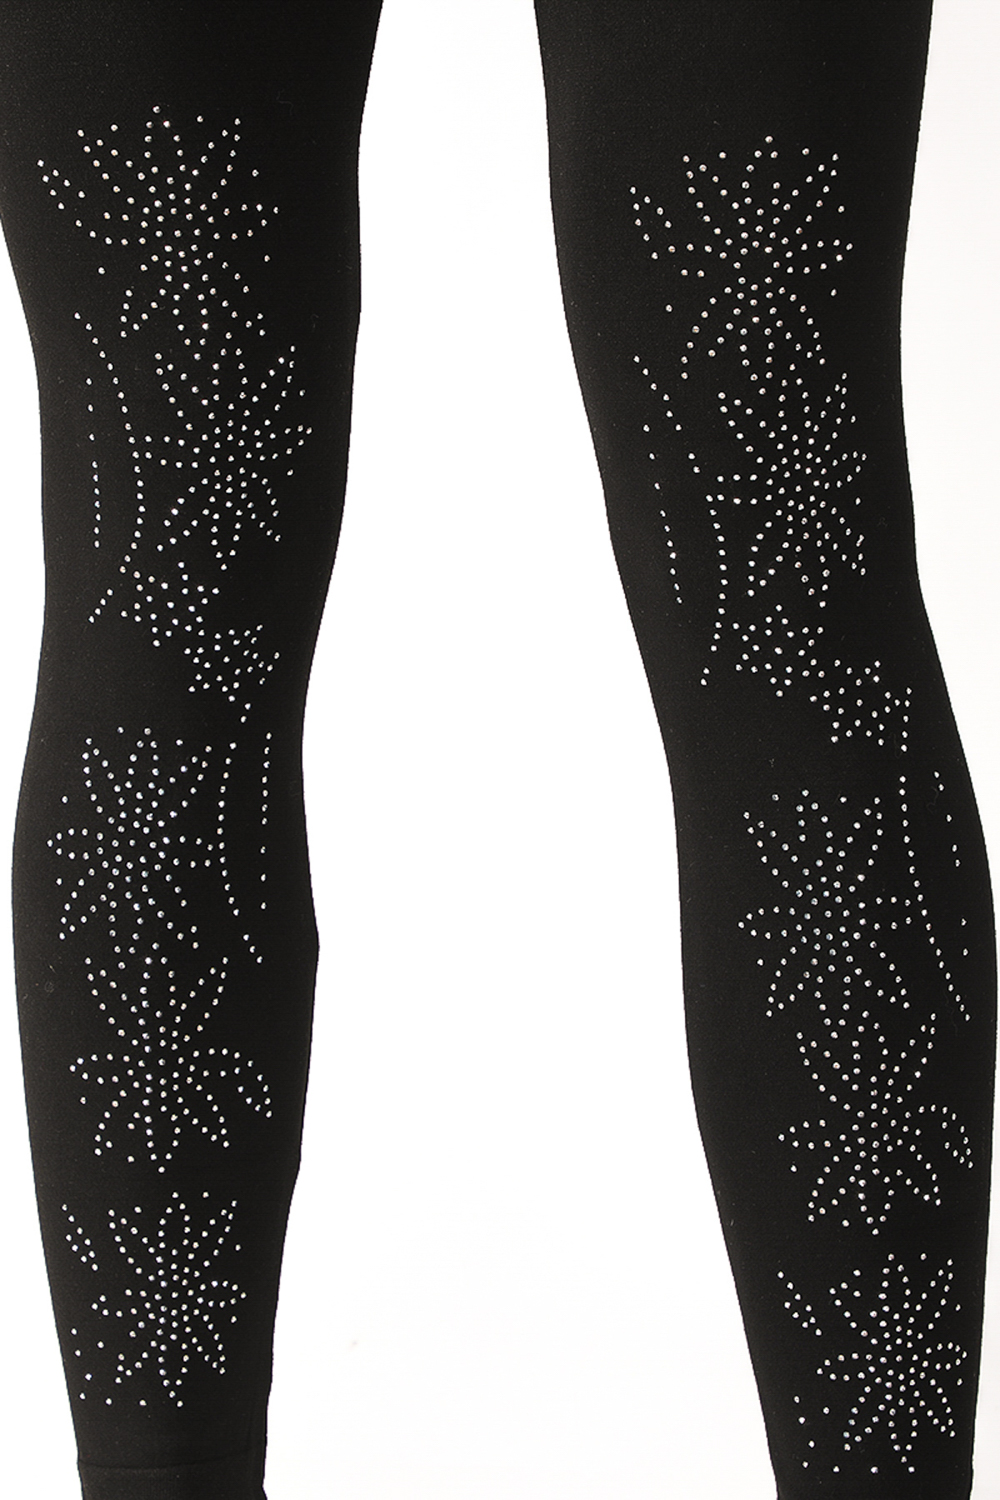 Denim Black Leggings with Embellished Lace Floral Design